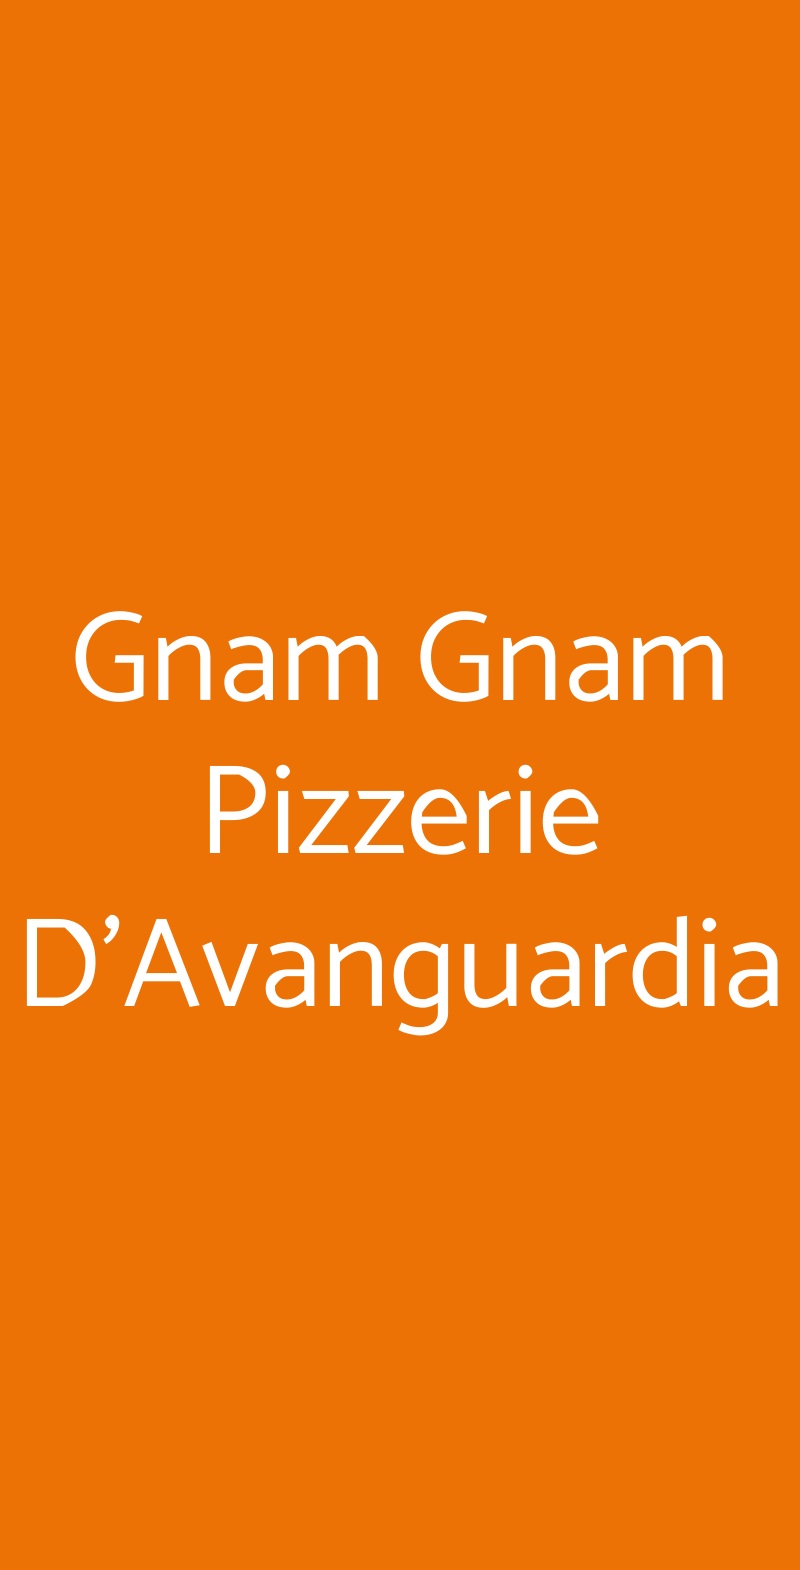 Gnam Gnam Pizzerie D'Avanguardia Fiumicino menù 1 pagina